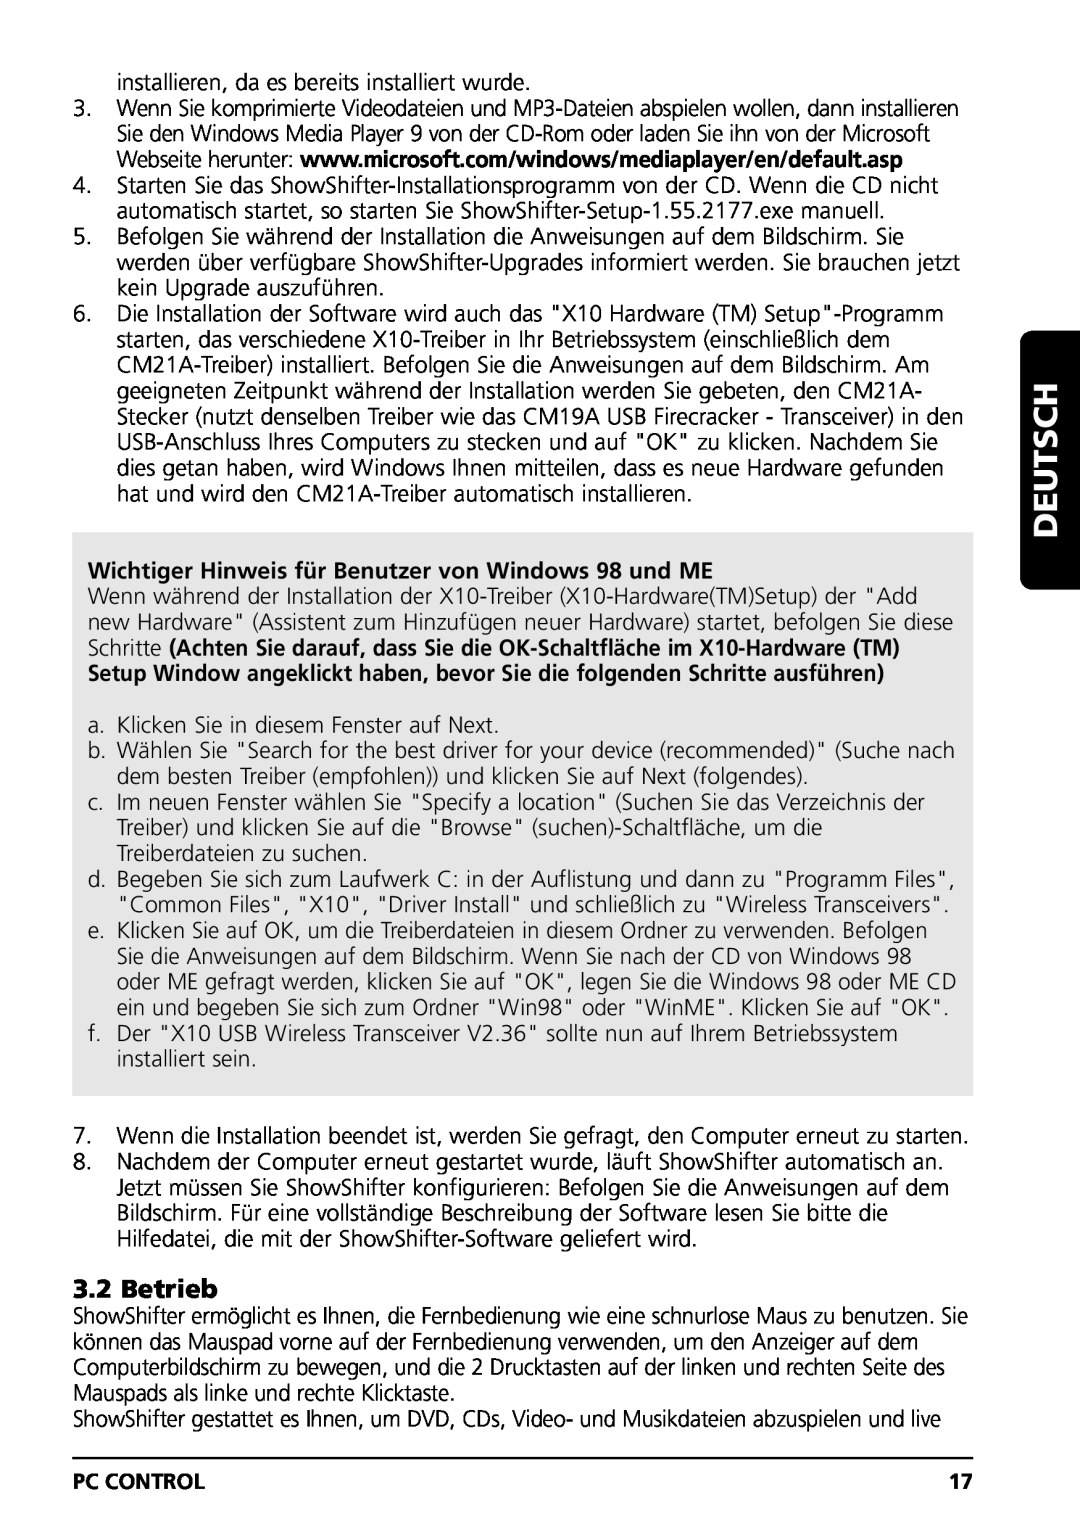 Marmitek PC CONTROL owner manual Betrieb, Wichtiger Hinweis für Benutzer von Windows 98 und ME, Deutsch 